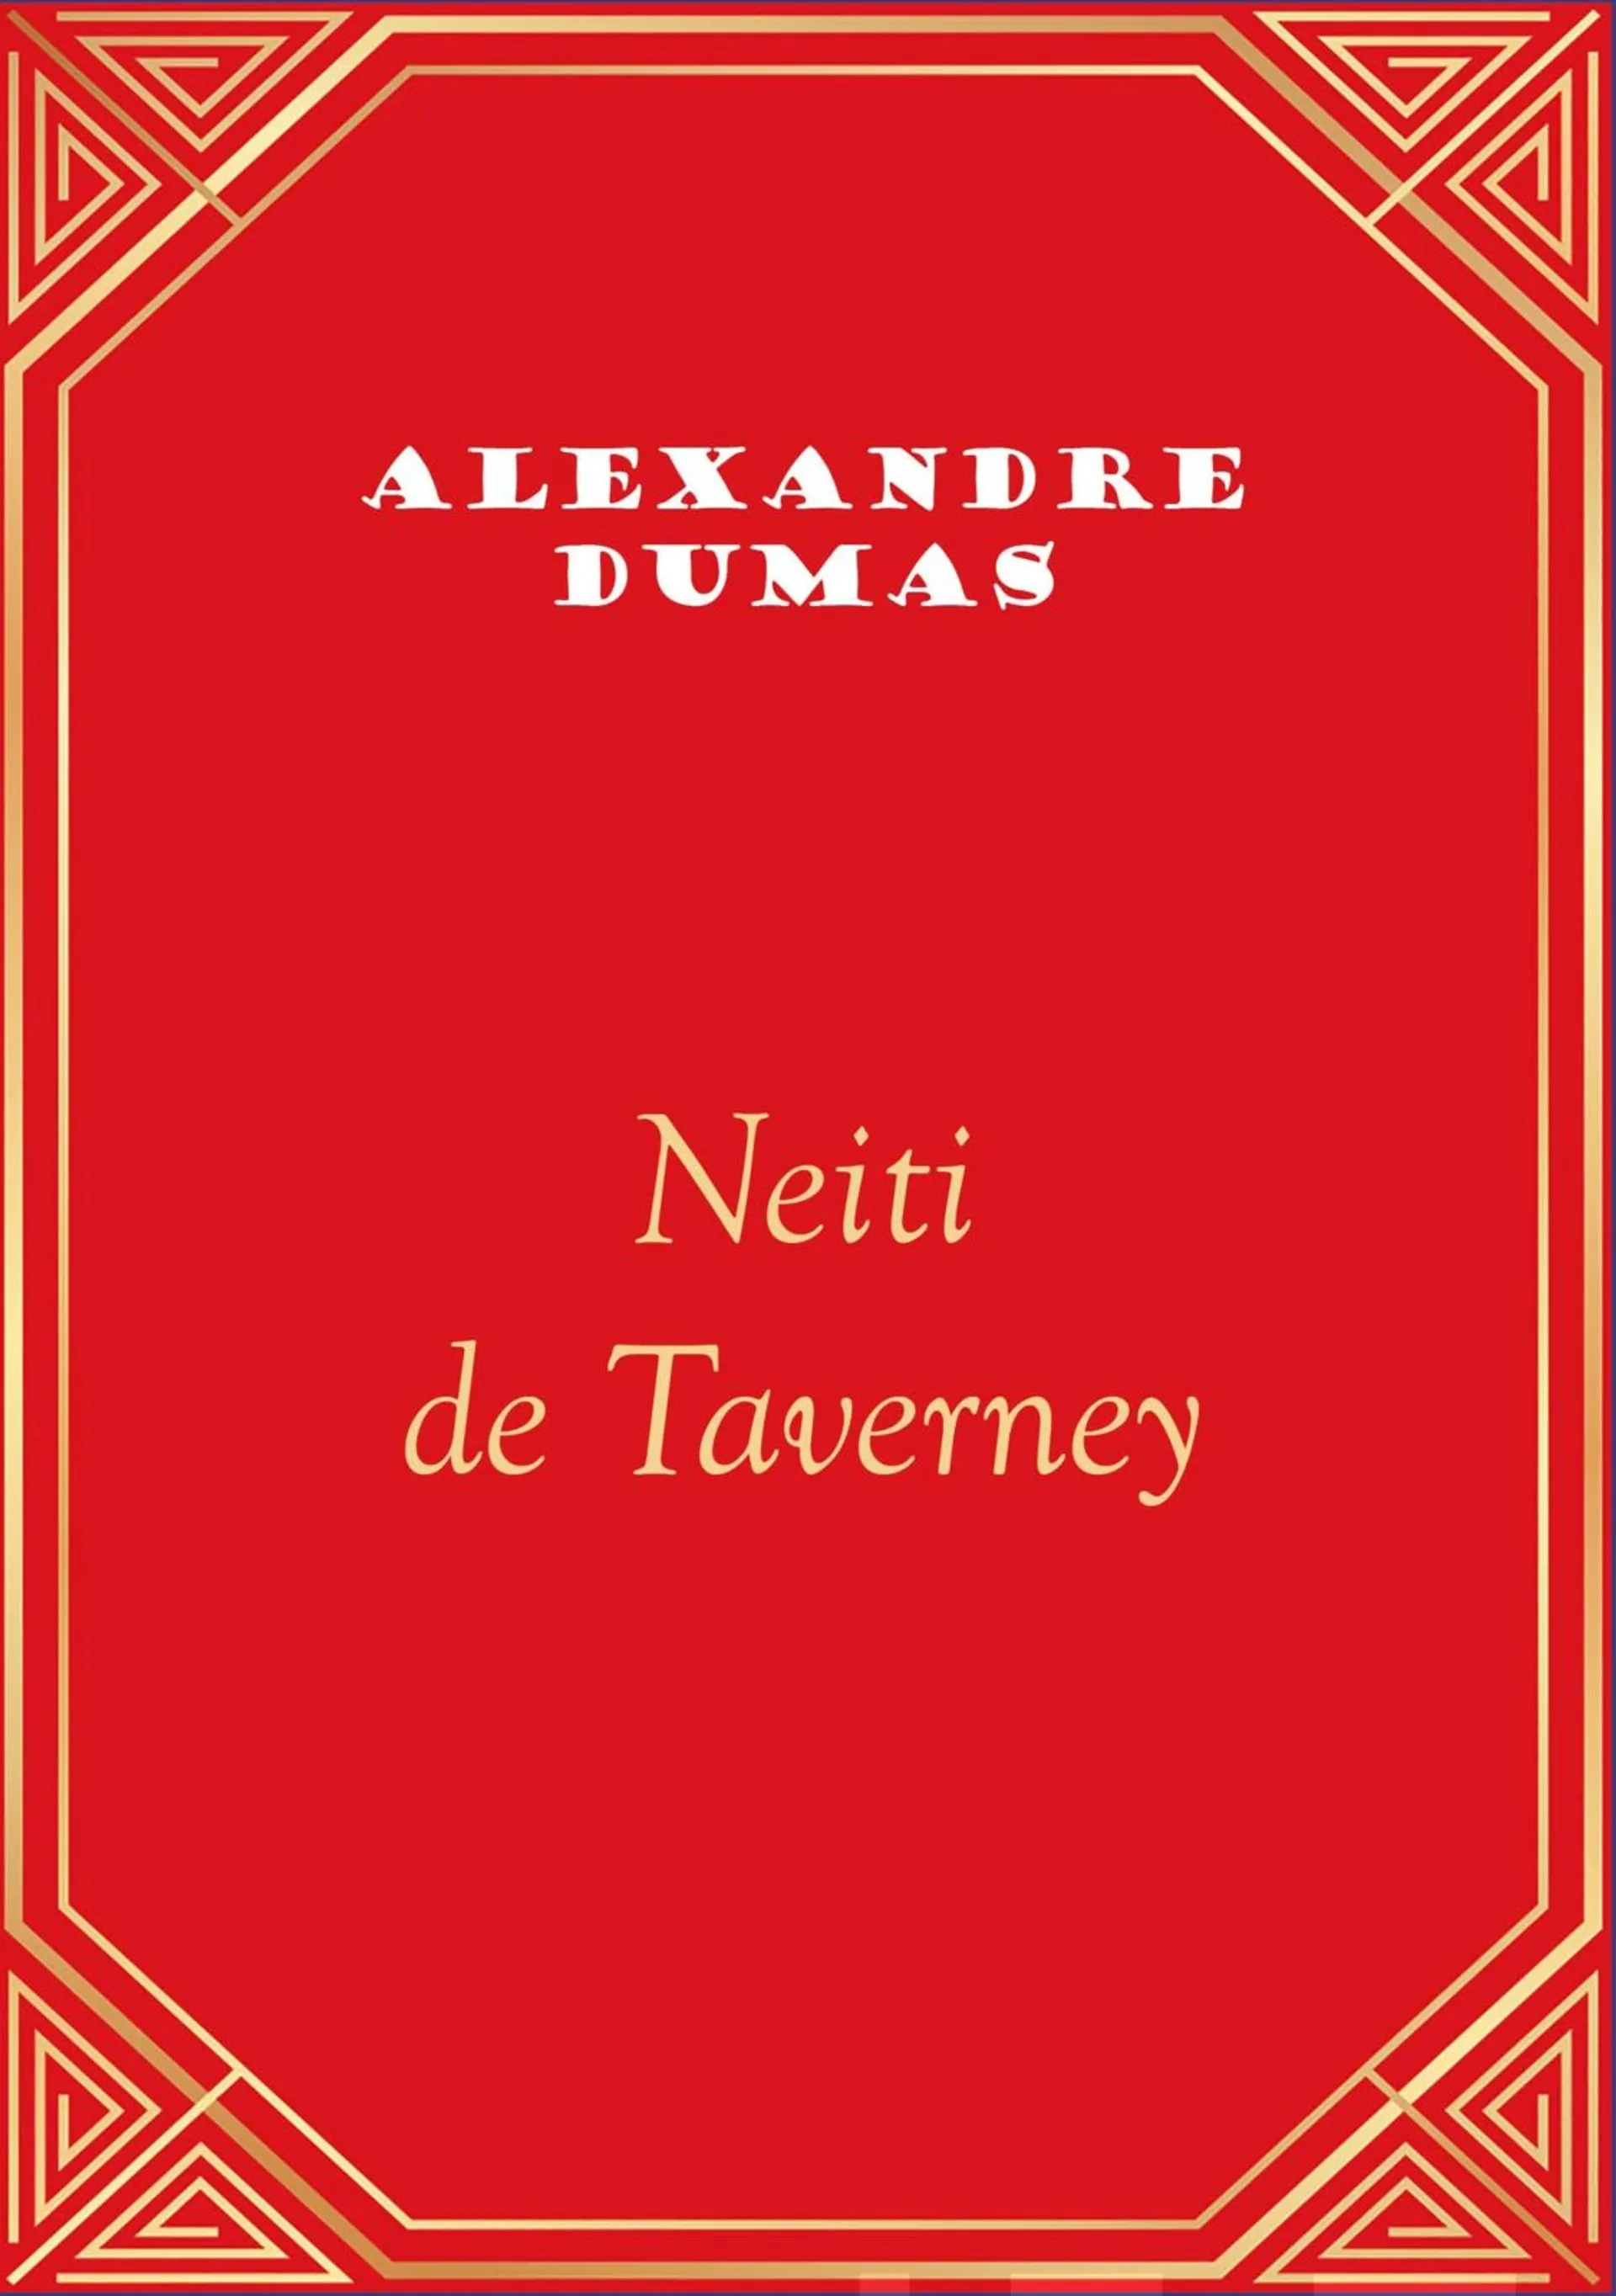 Dumas, Neiti de Taverney